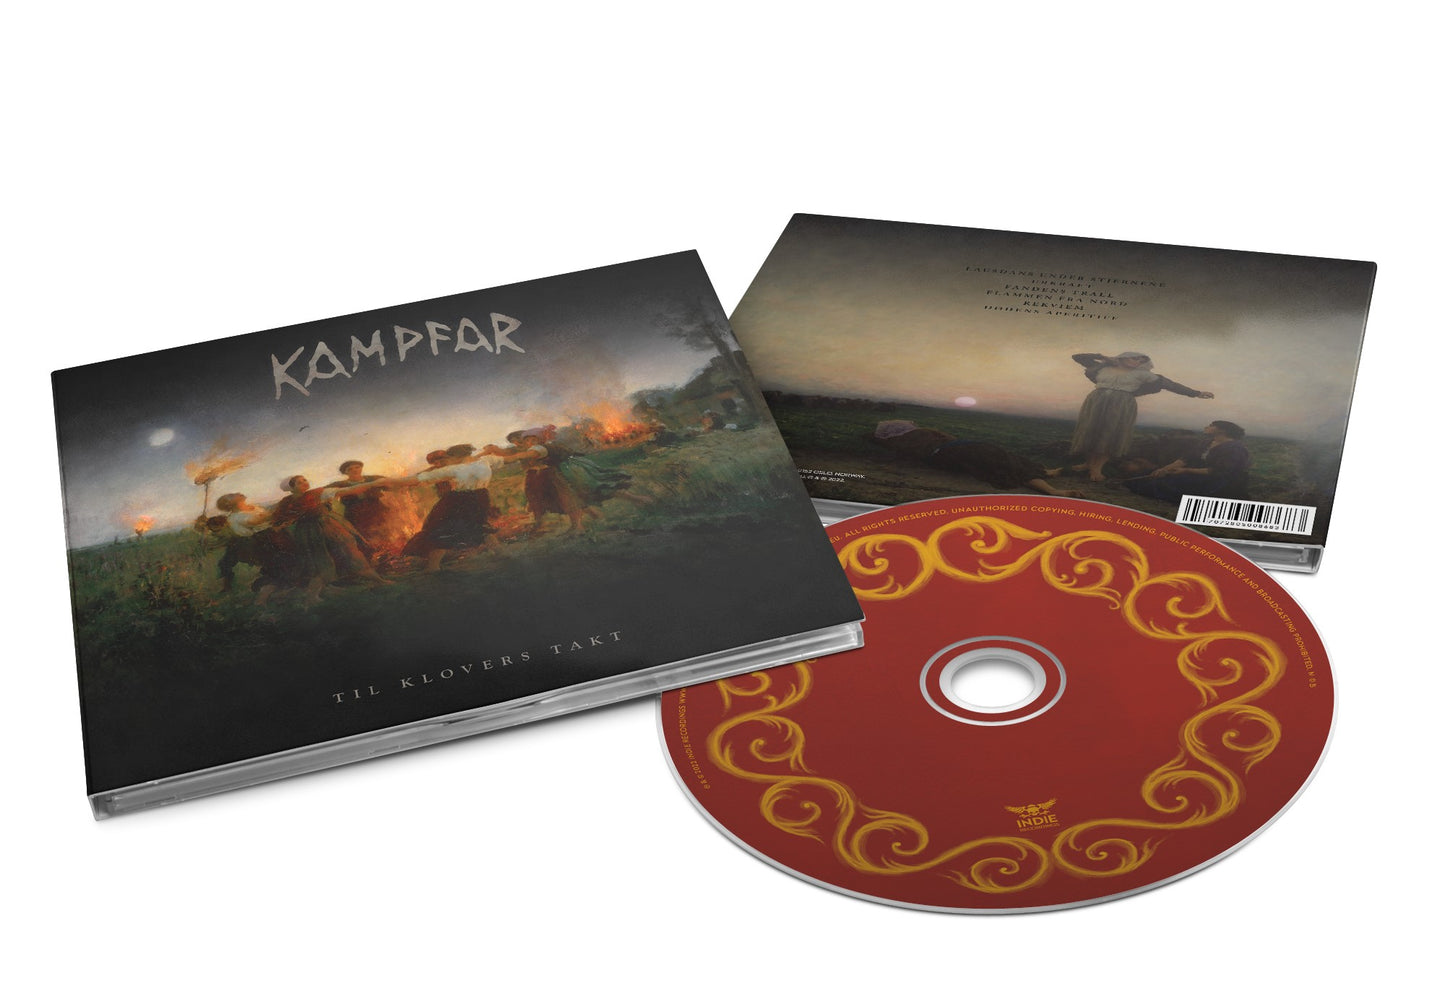 KAMPFAR - Til Klovers Takt (CD Digipack)